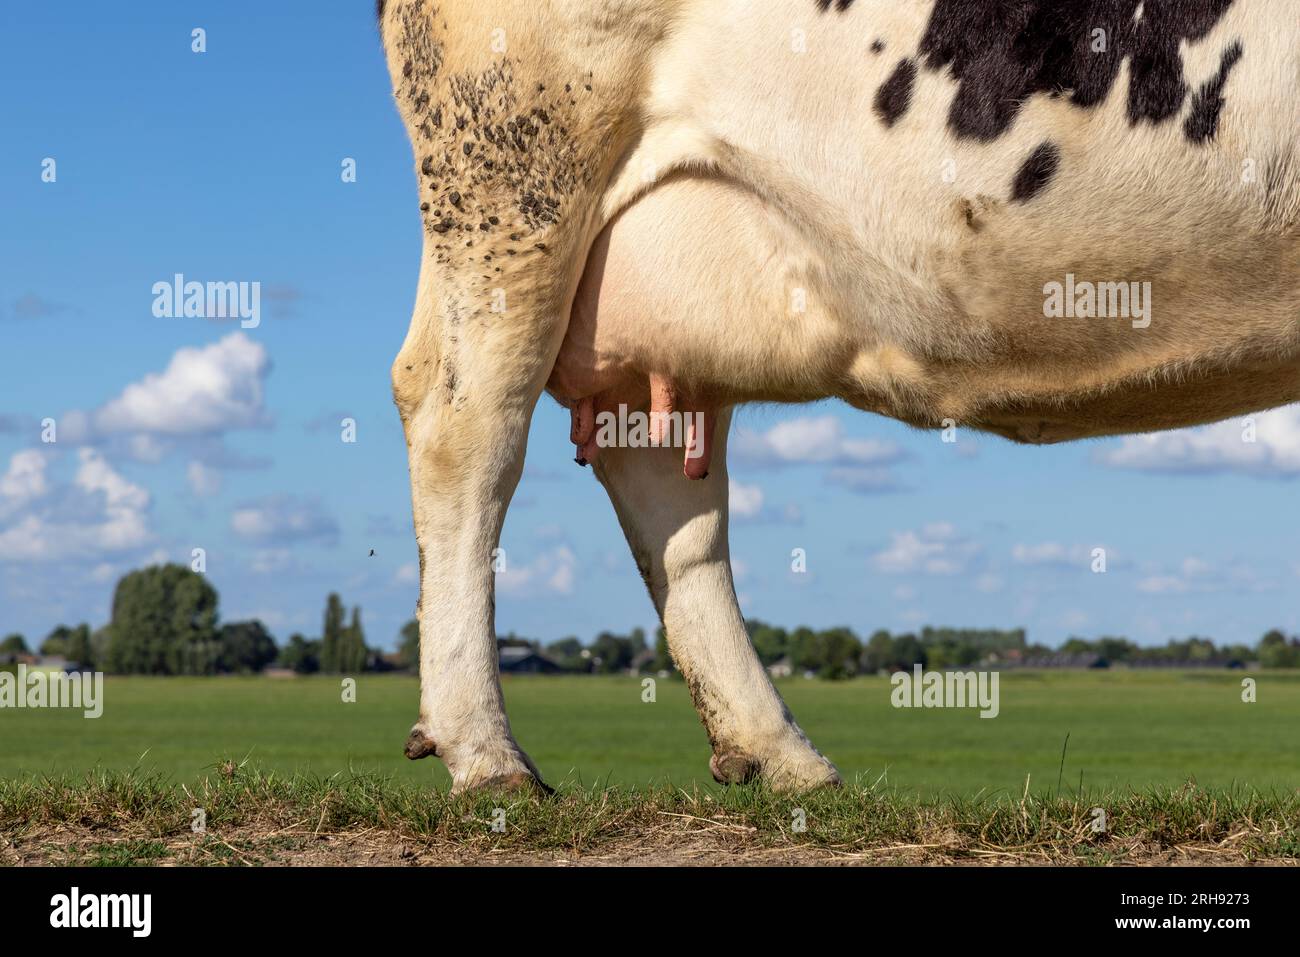 Pis et trayons de vache, veines roses douces et mammaires, la moitié arrière de l'animal se tenant sur une digue aux pays-bas Banque D'Images